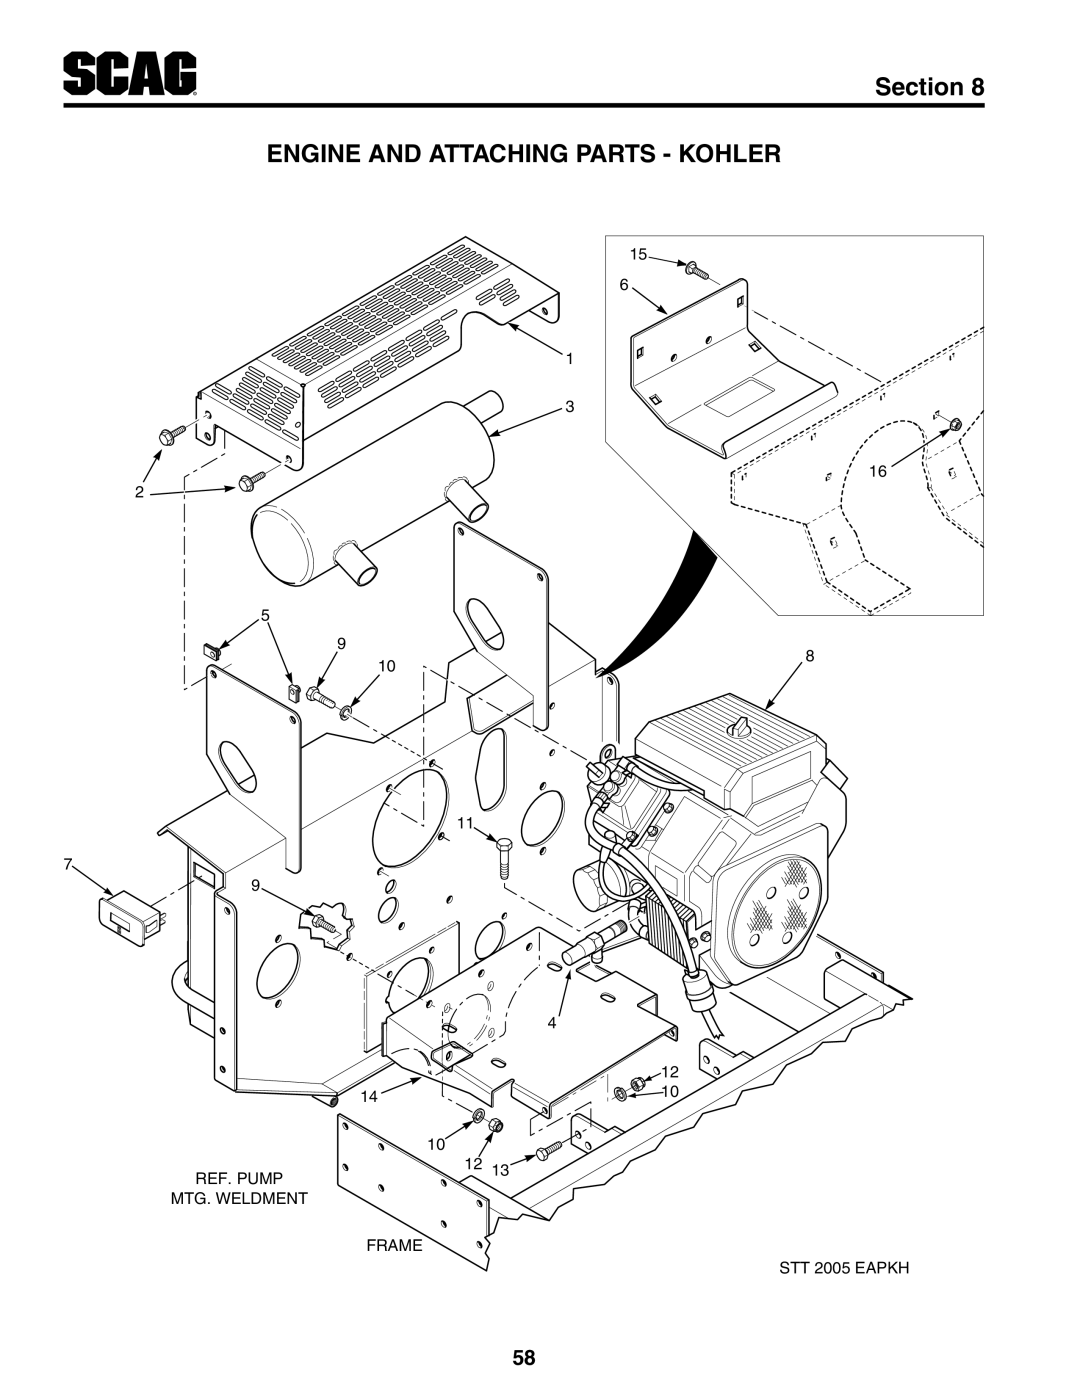 Scag Power Equipment STT-35BVAC, STT-29DFI Engine And Attaching Parts - Kohler, Section, Ref. Pump, Mtg. Weldment, Frame 